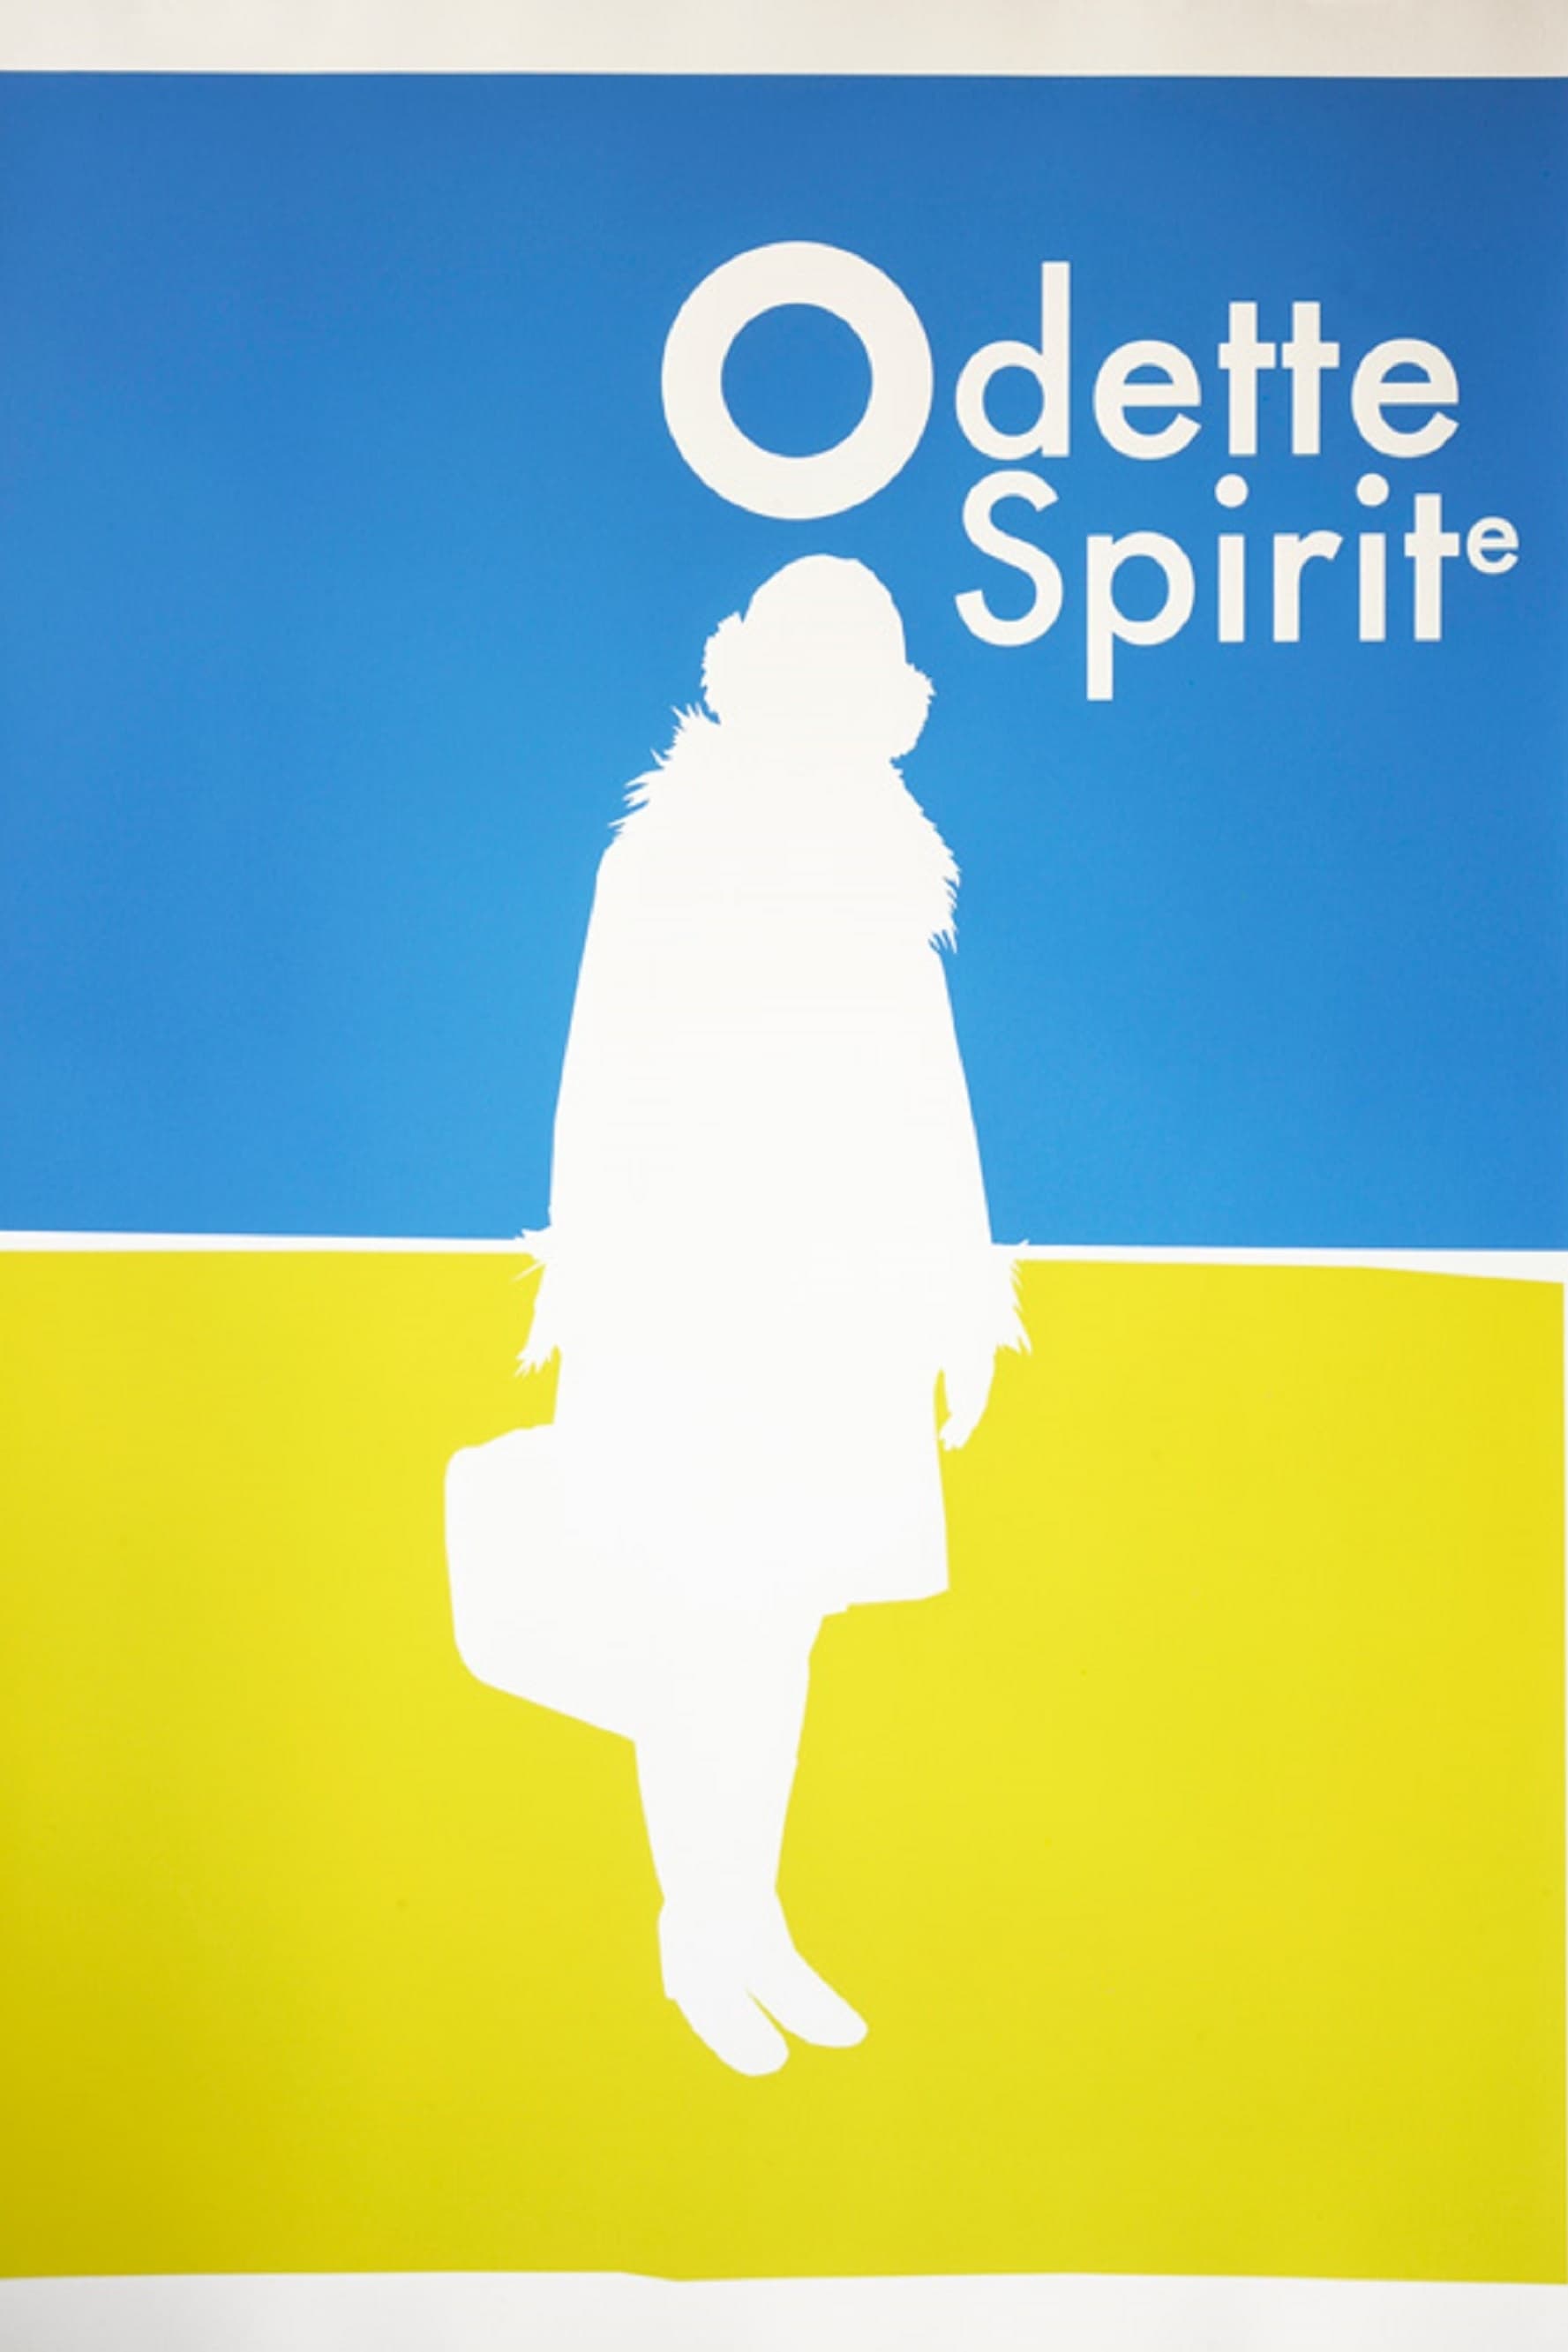 Odette Spirite